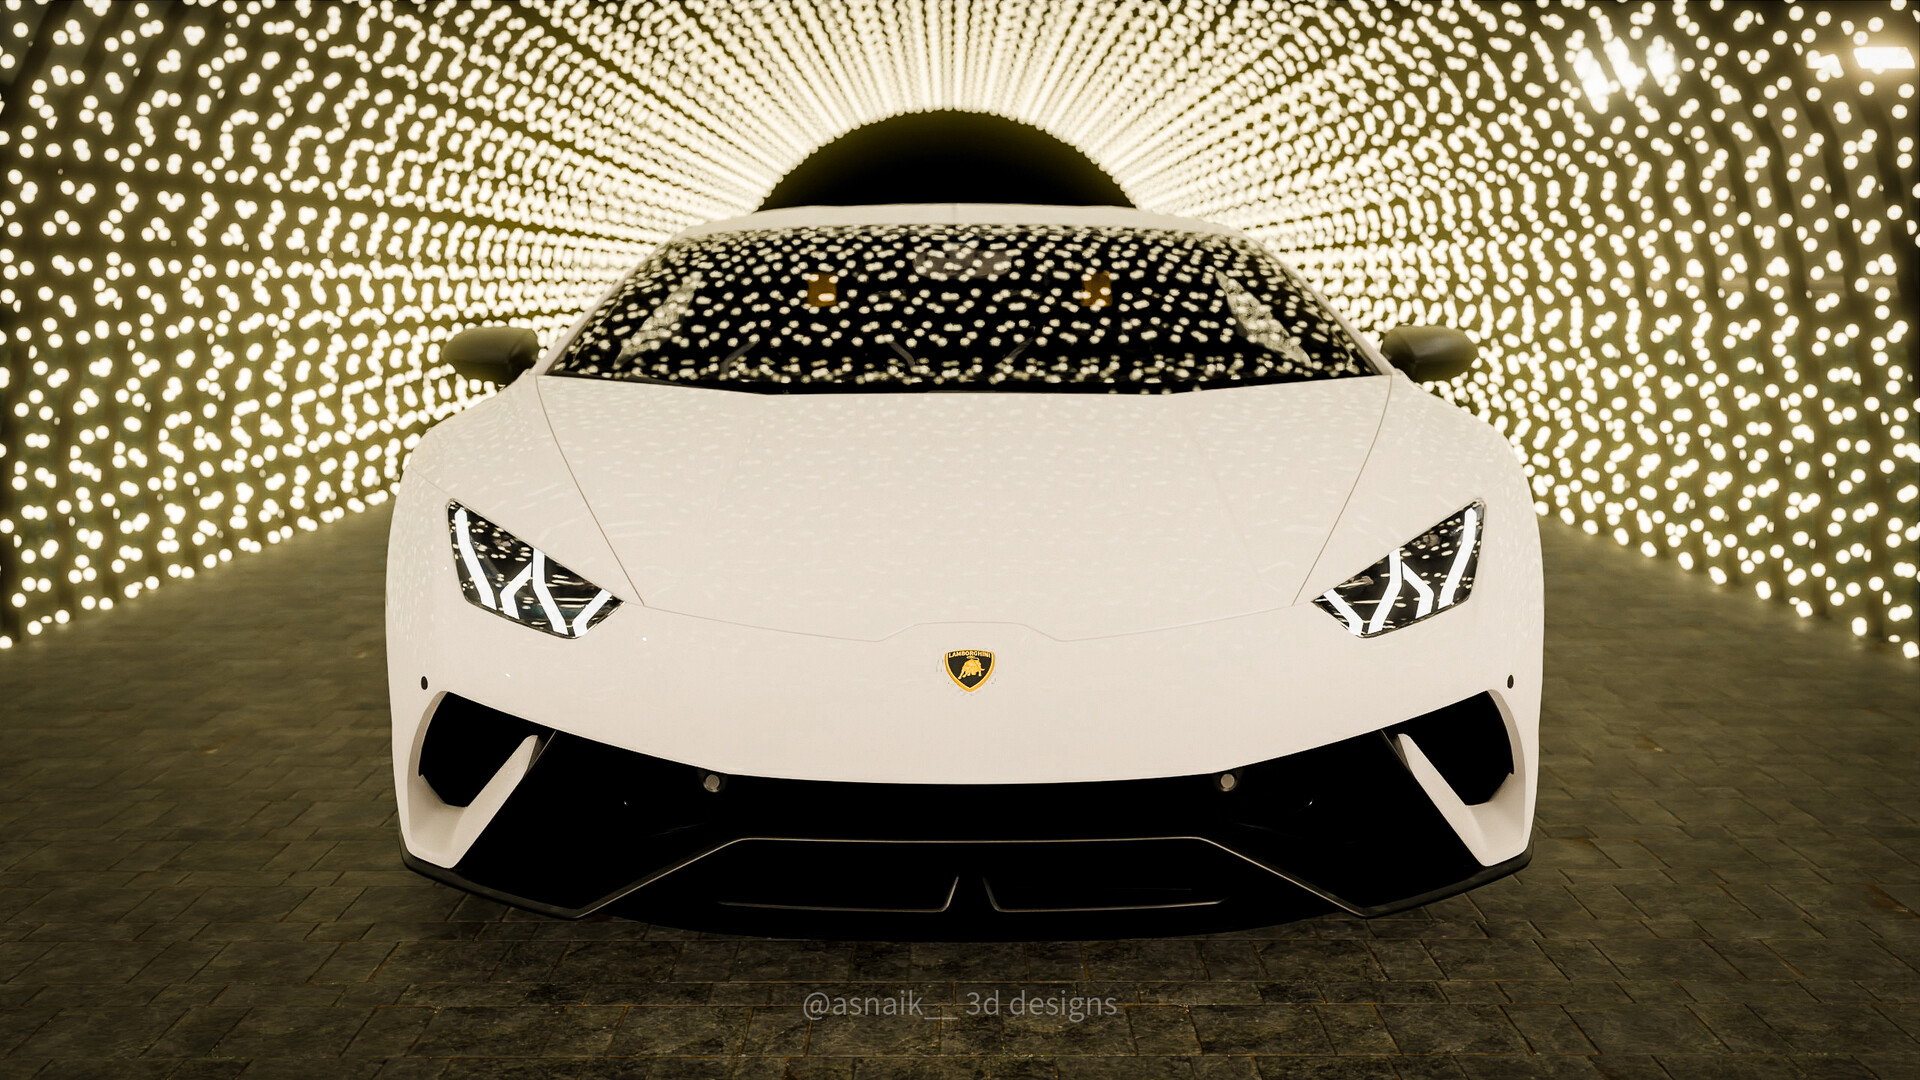 ArtStation - Lamborghini huracan performante 3d cgi render!